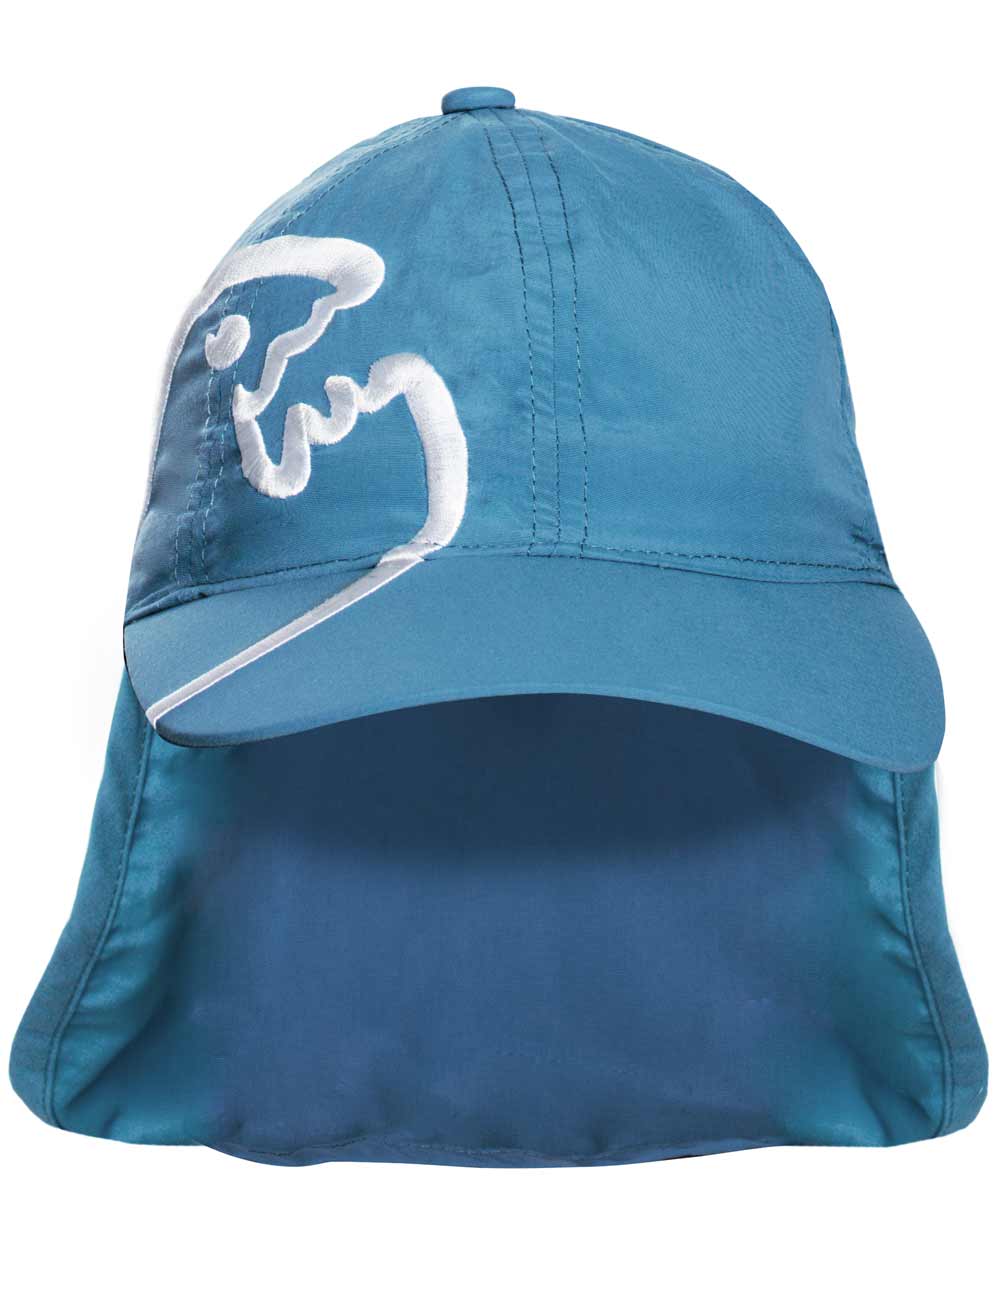 Schutz Cap Bites mit Nackenschutz Kinder recycelt blau front